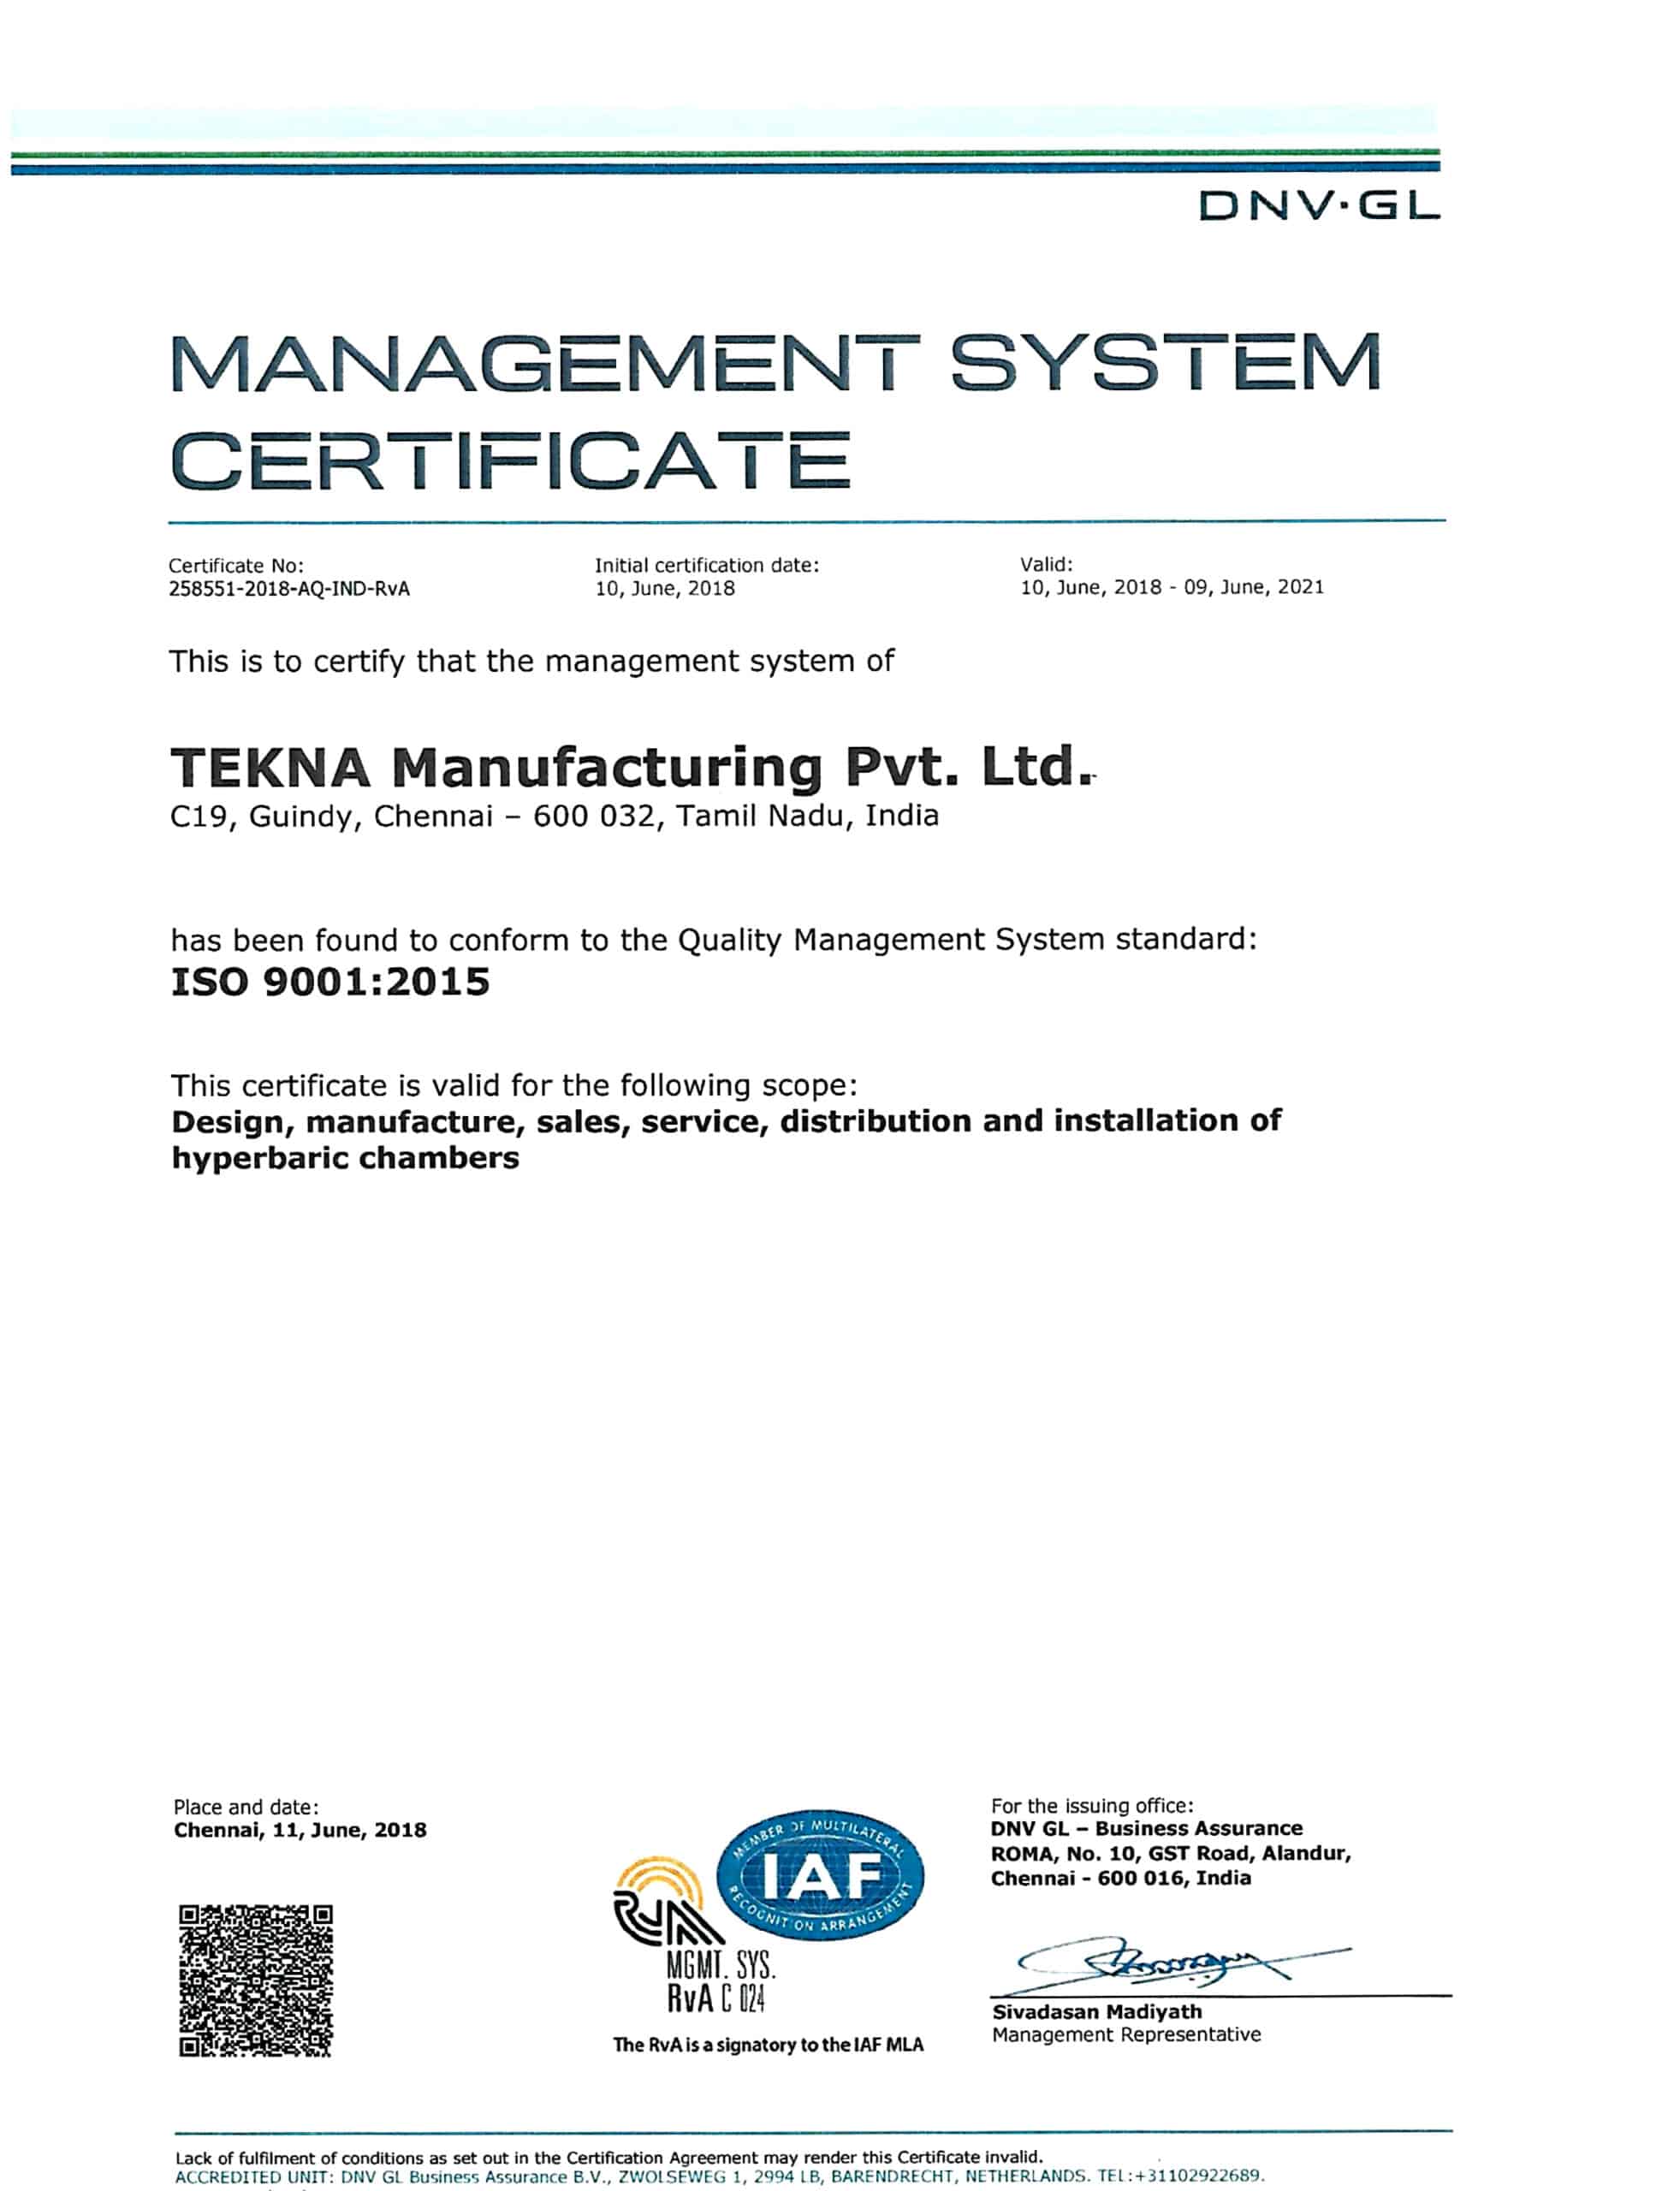 TEKNA GYÁRTÁSA ISO 9001-2015